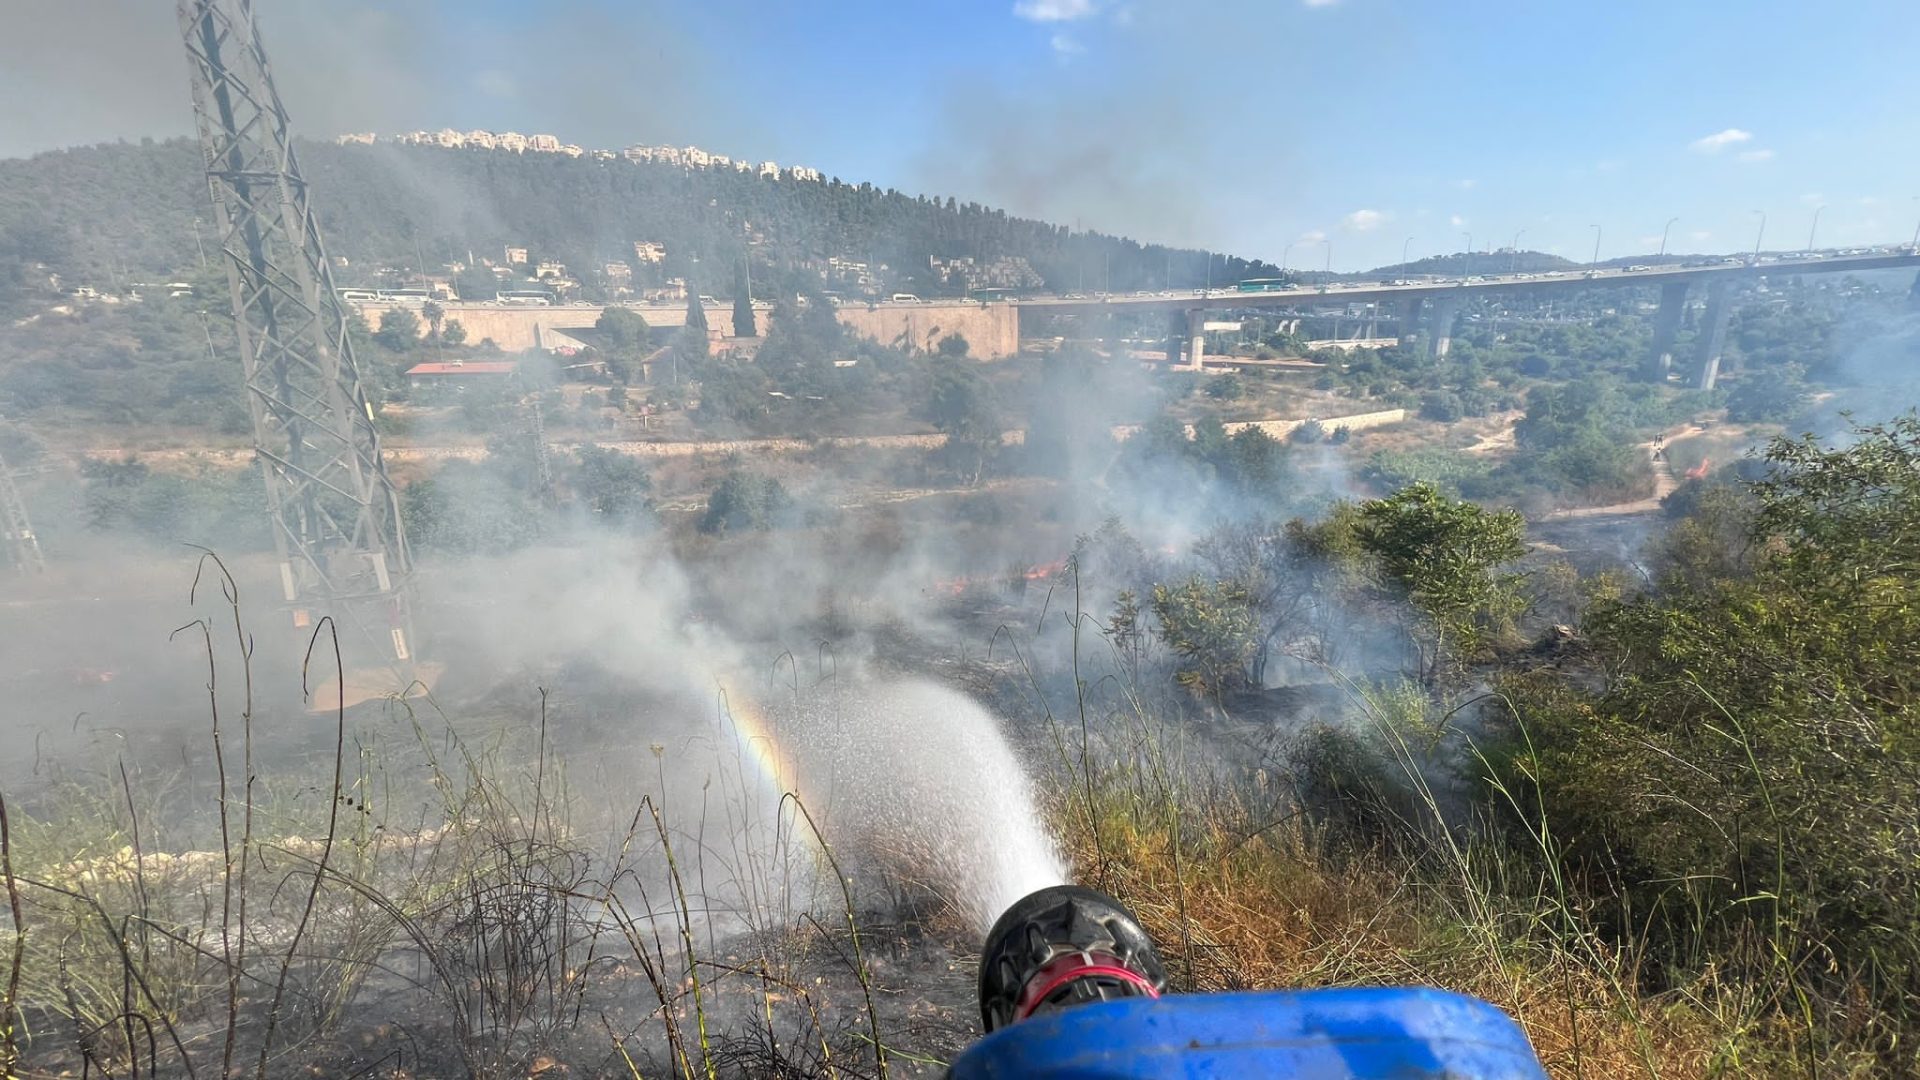 השריפה בסמוך למבשרת (צילום: תיעוד מבצעי כב"ה מחוז ירושלים)